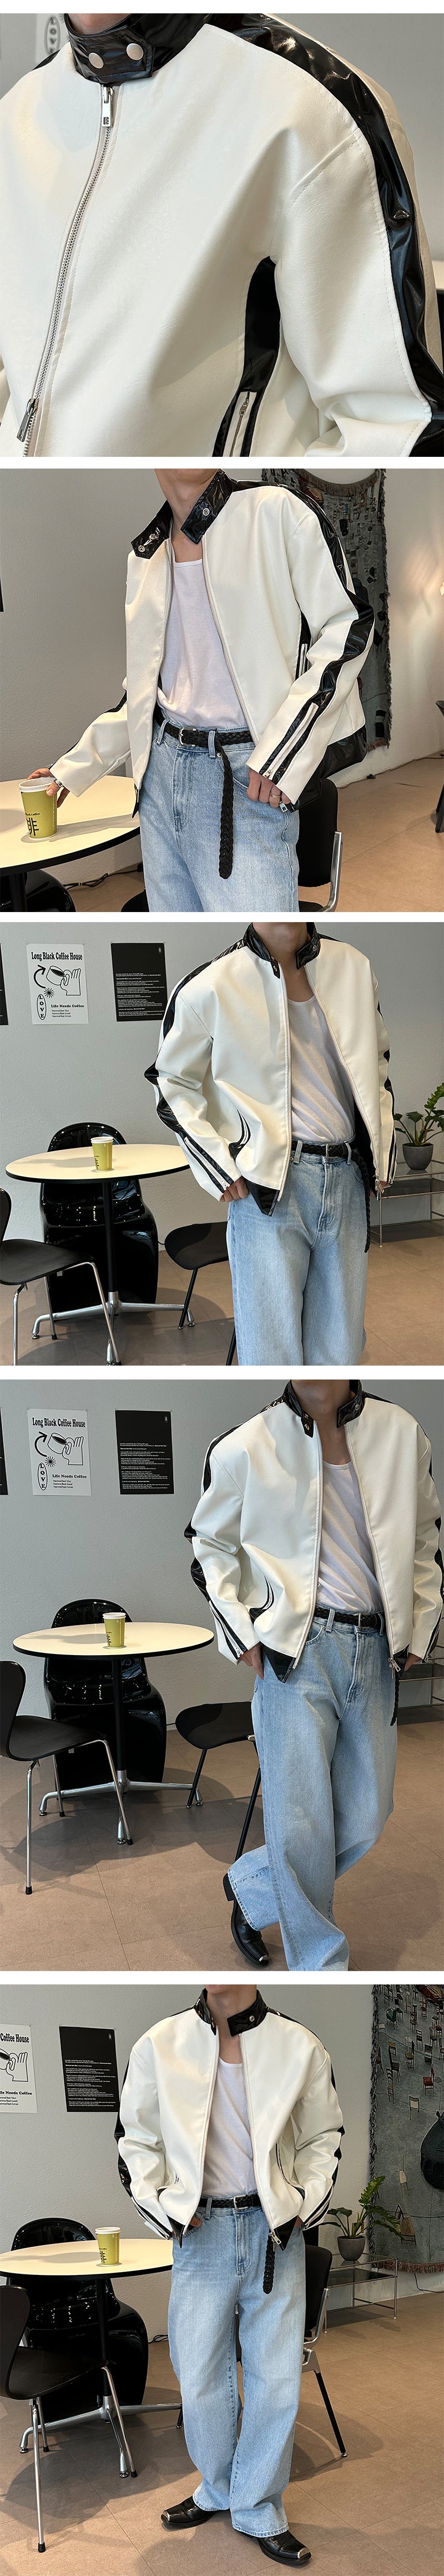 [ユニセックス] グロッシーバイカーレザージャケット / [Unisex] Glossy biker leather jacket(2color)